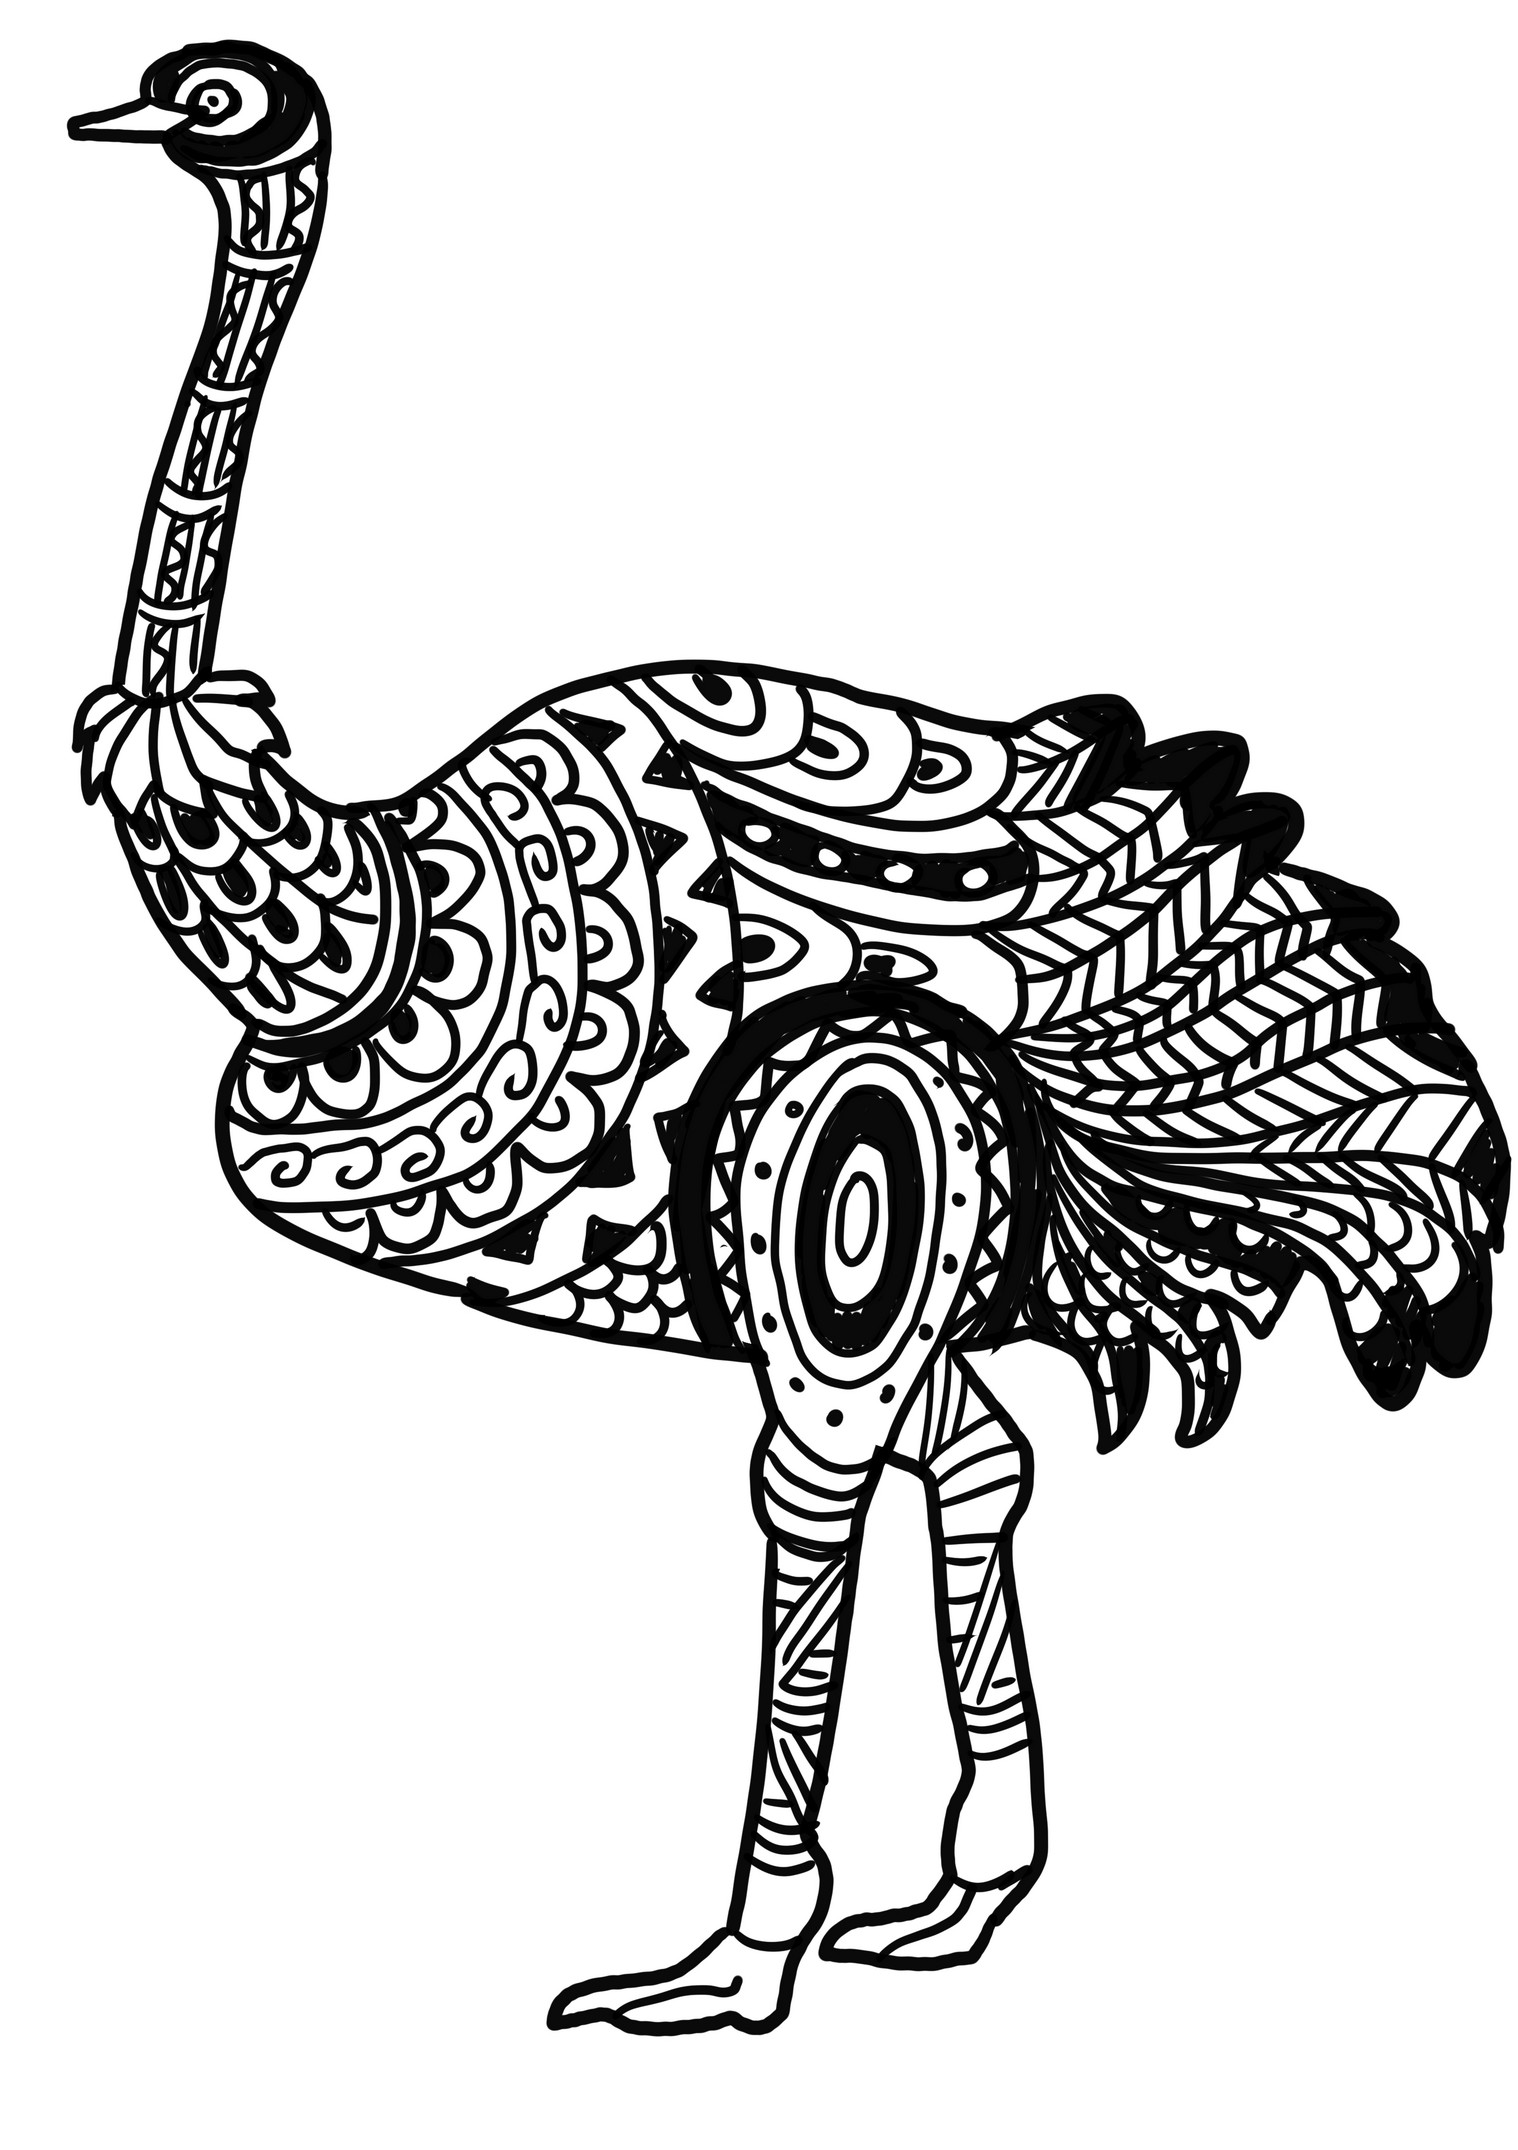 Dibujo de avestruz realista para colorear